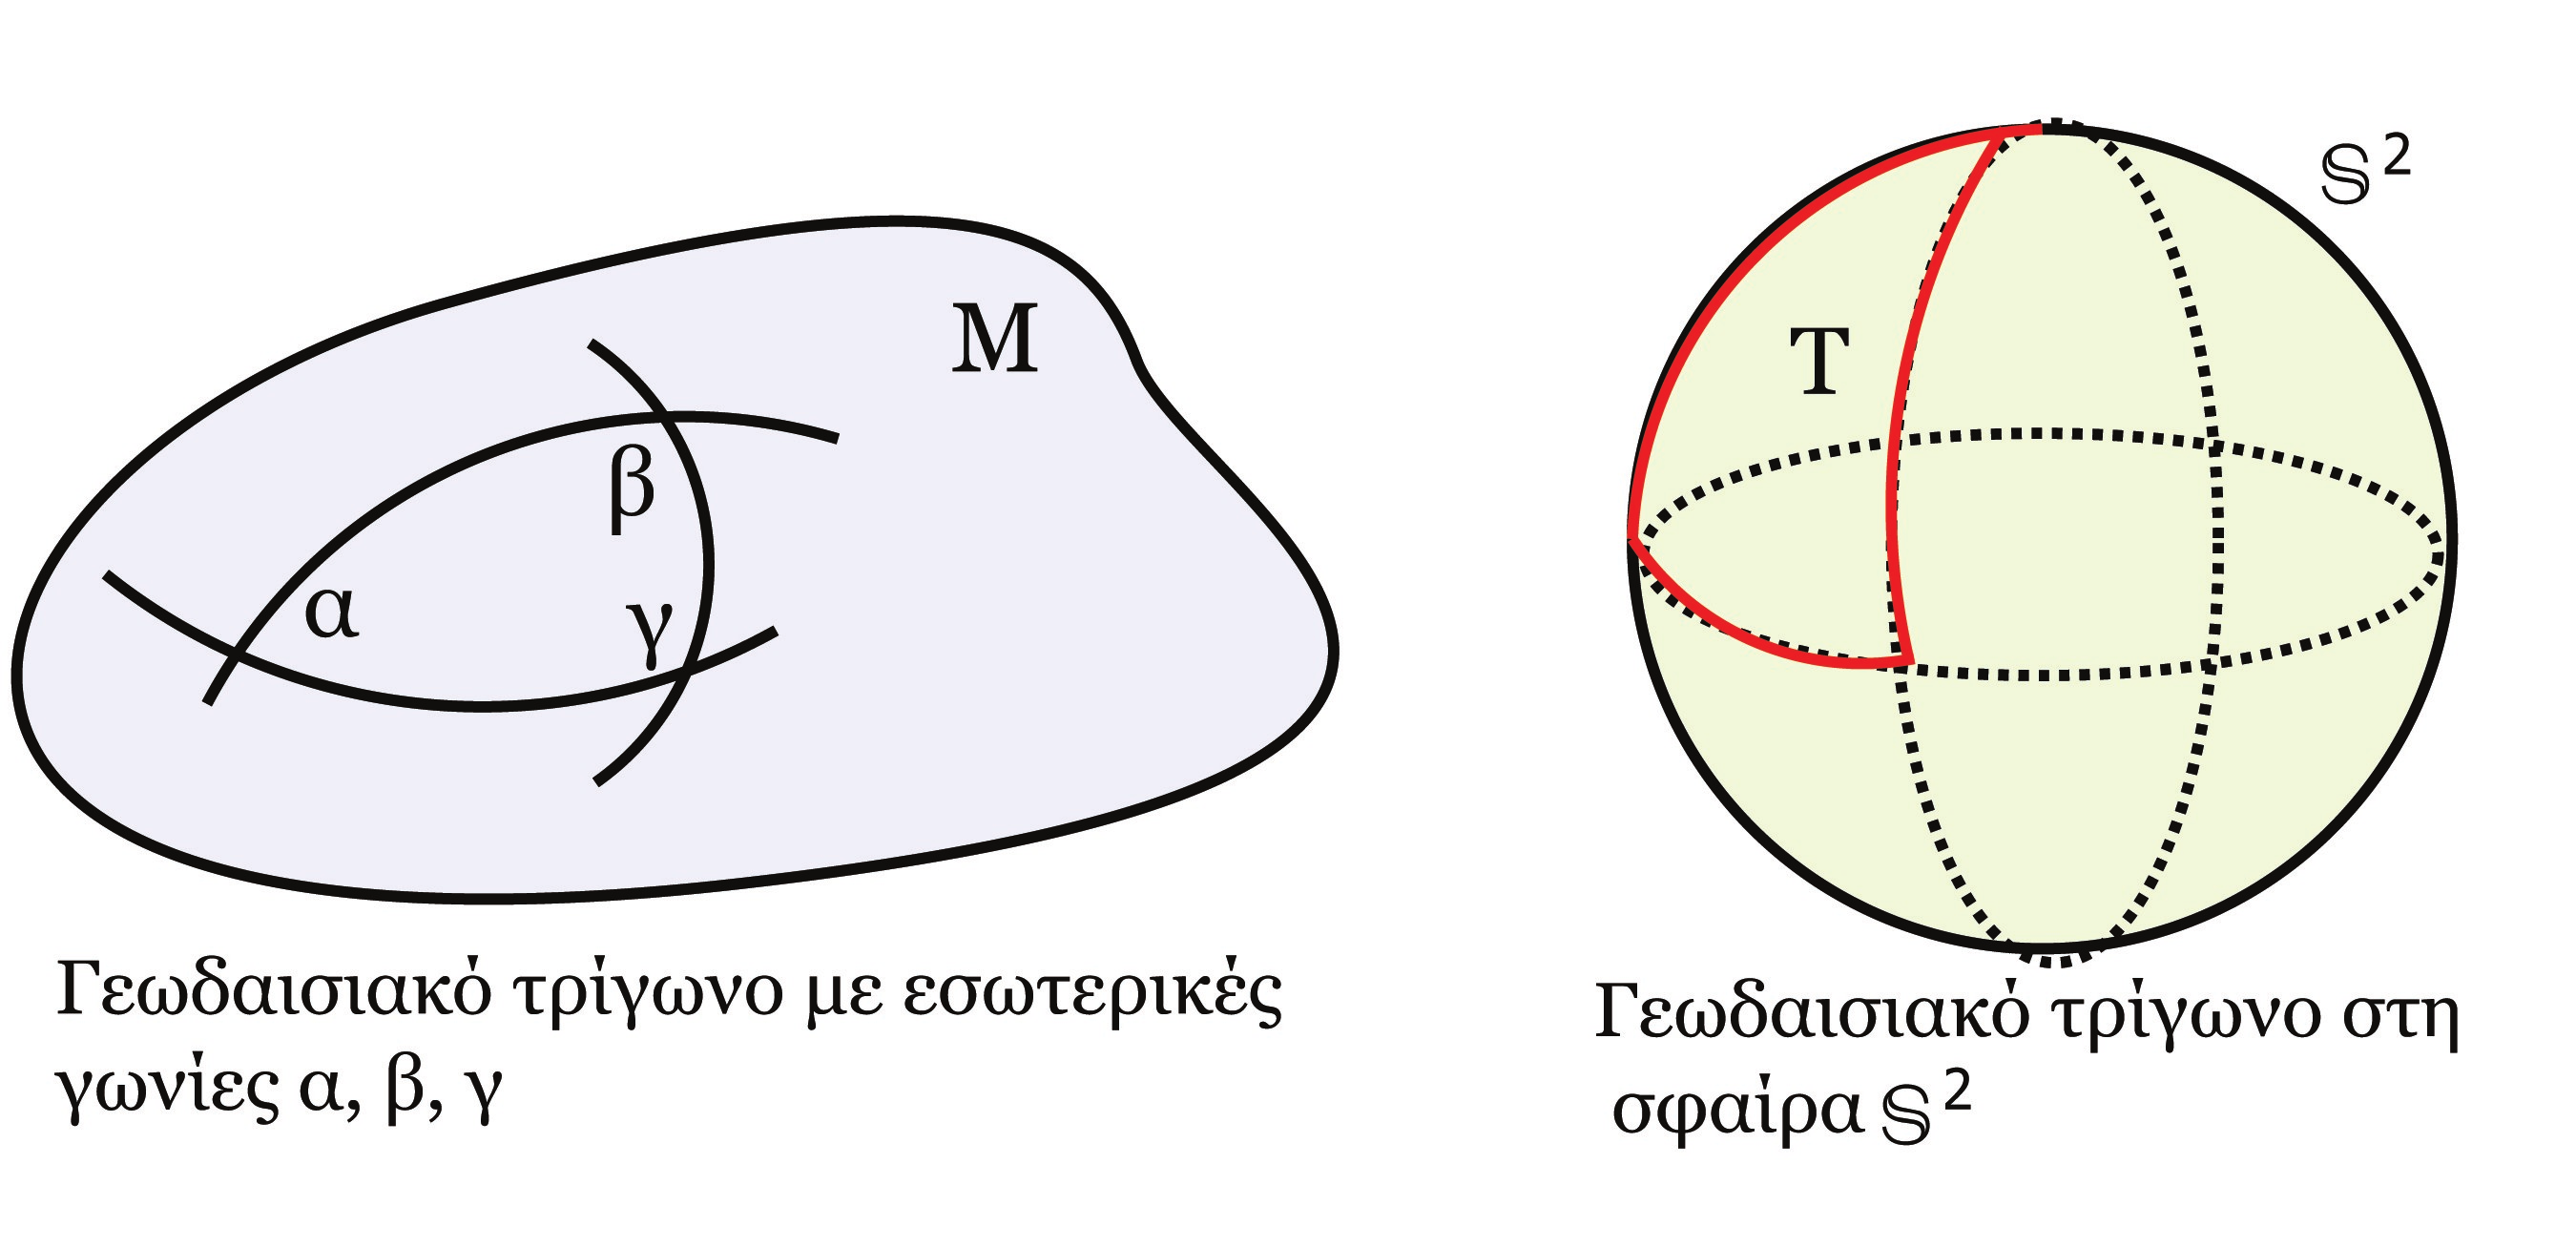 184 Το Θεώρημα Gauss-Bonnet της μορφής M fda, όπου da το στοιχειώδες εμβαδό στο U.